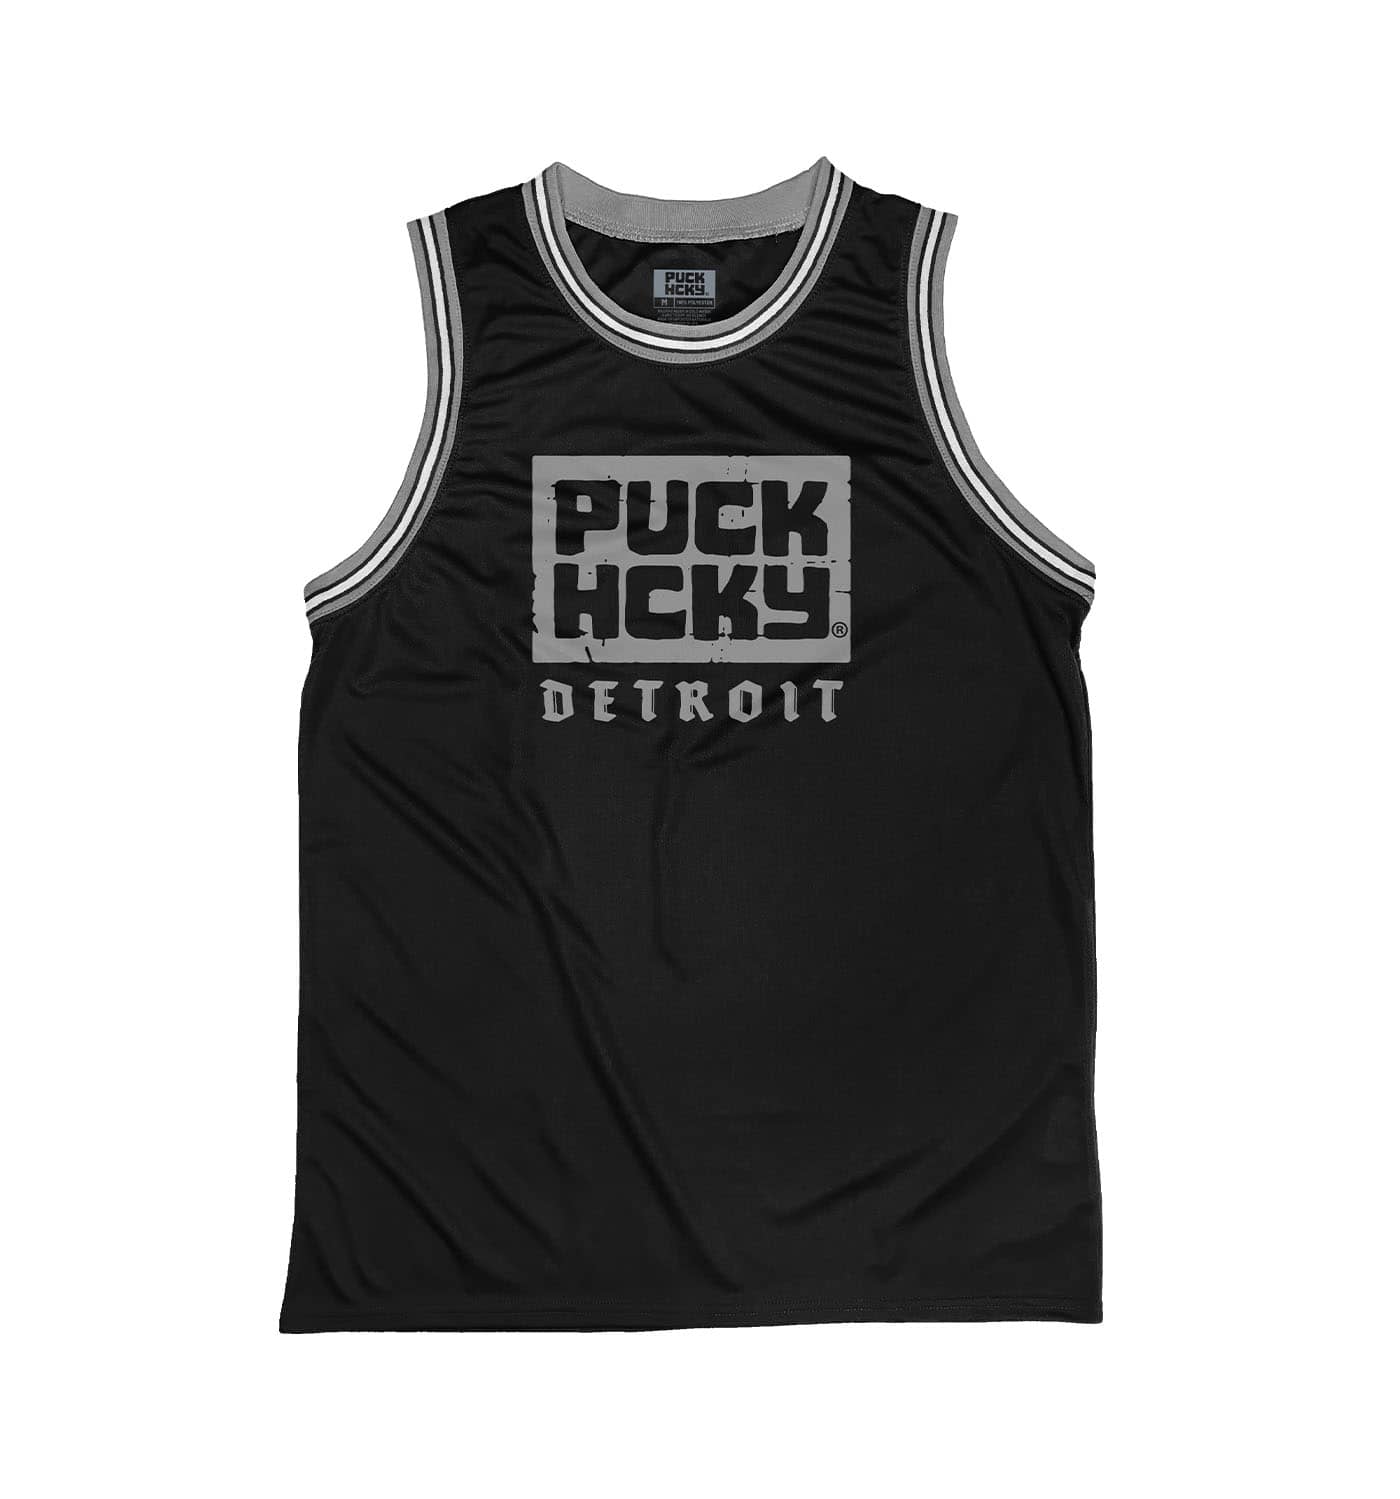 Puck Hcky 'Detroit' Summer League Jersey, Black / S